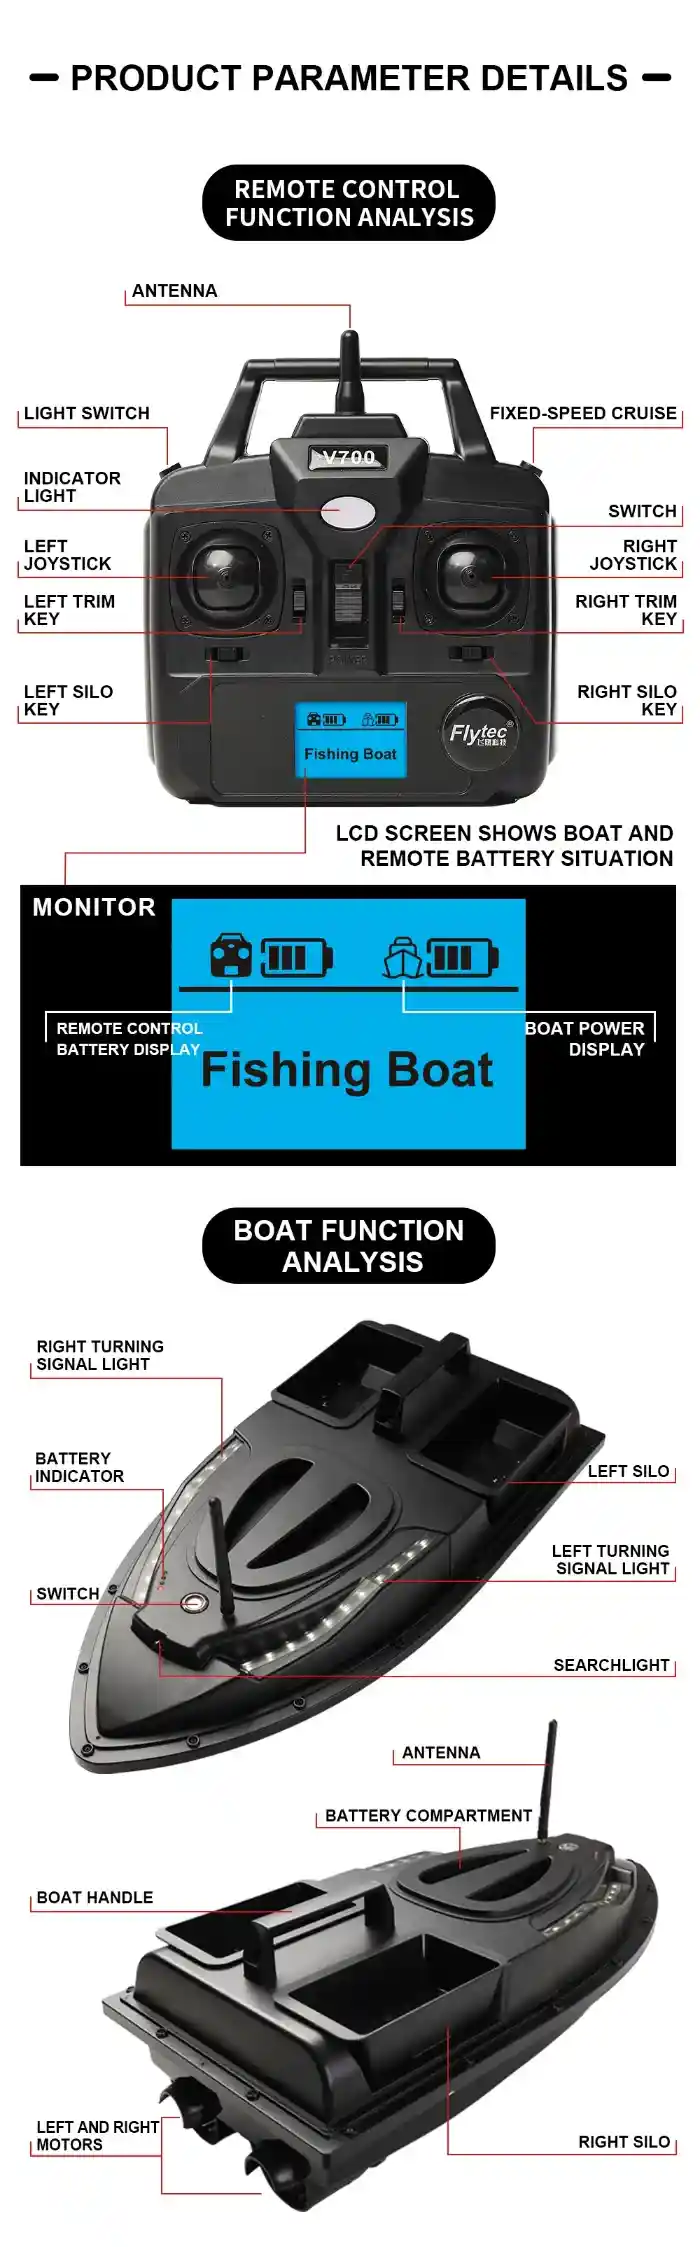 مشخصات رادیو قایق کنترلی ماهیگیری v700